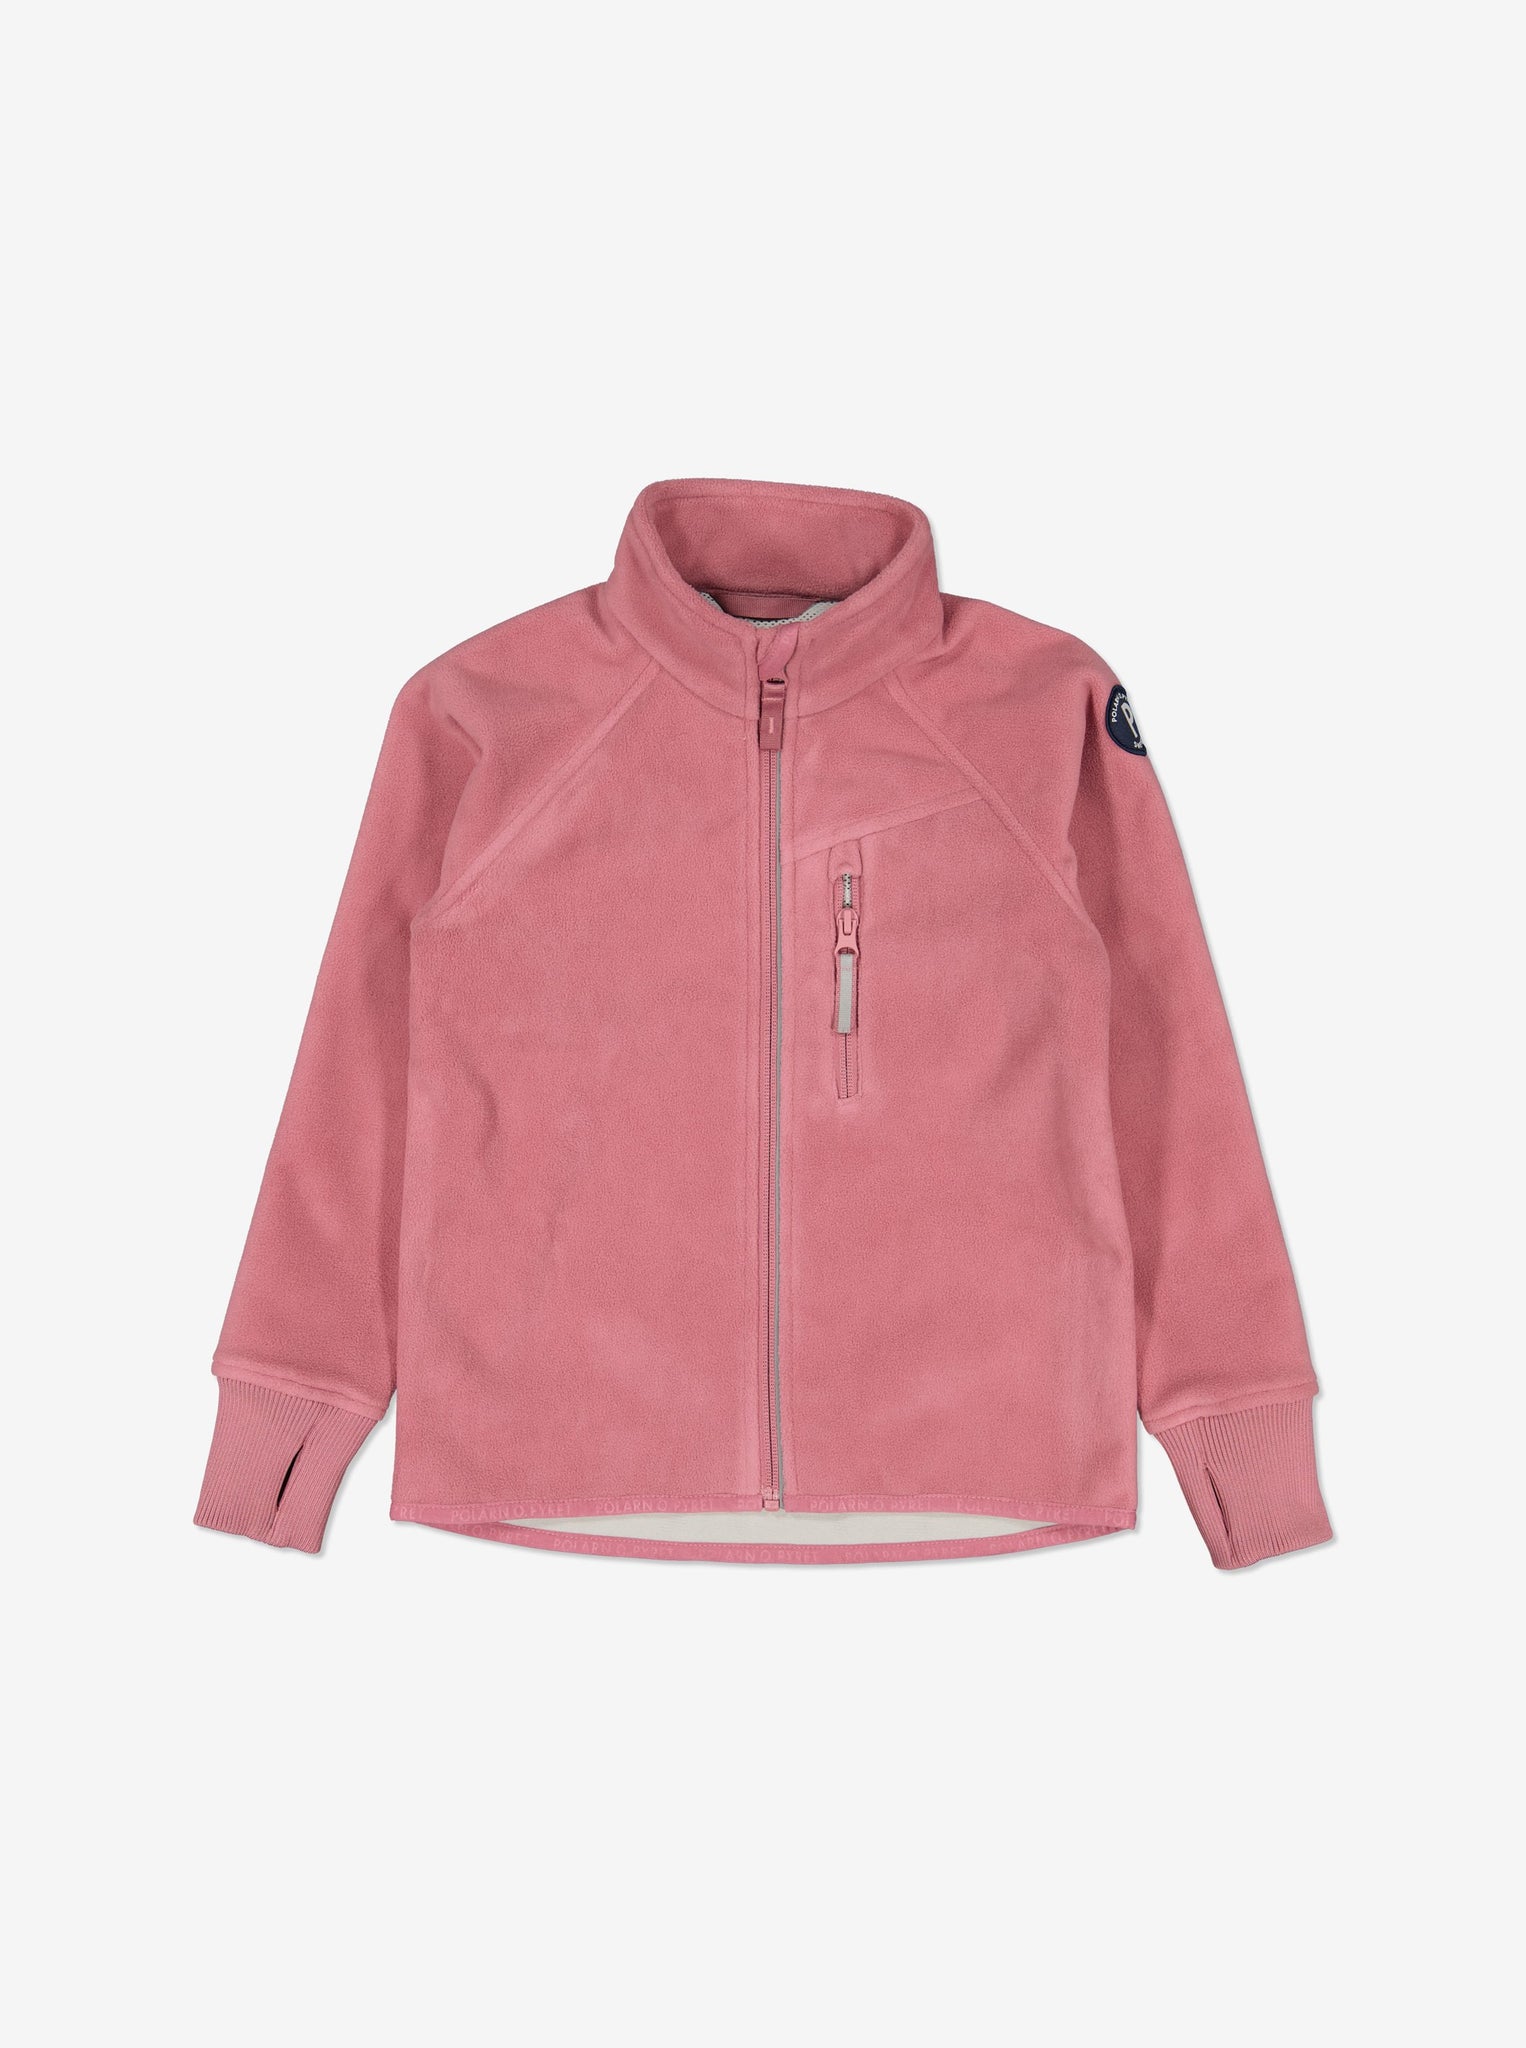 Pink Kids Showerproof Fleece Jacket from Polarn O. Pyret Kidswear. Quality Kids Fleece Jacket